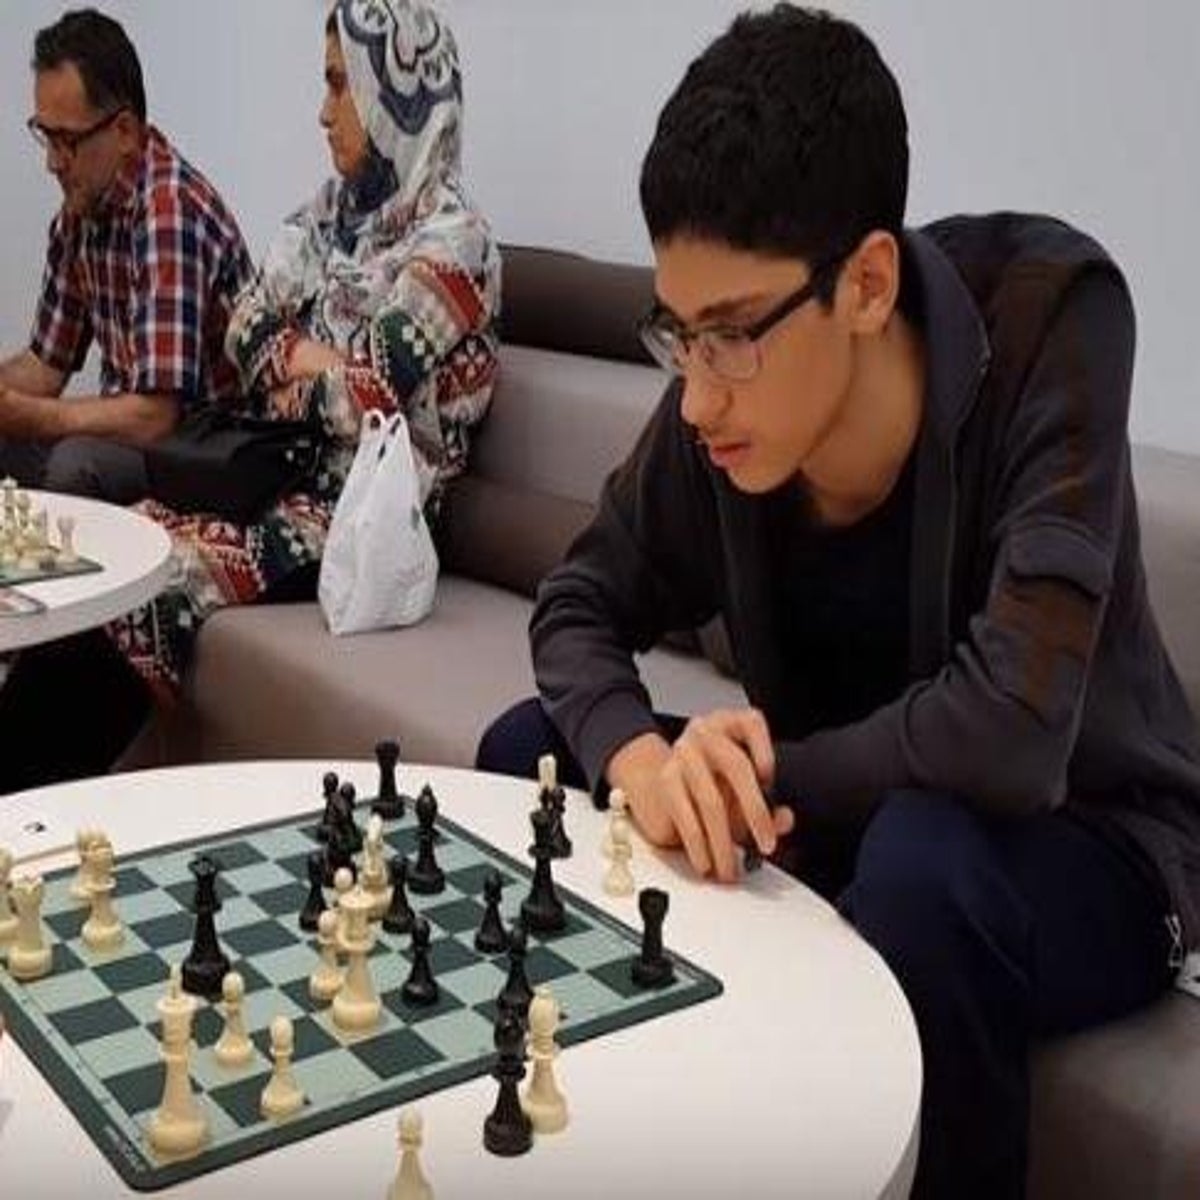 The chess games of Alireza Firouzja